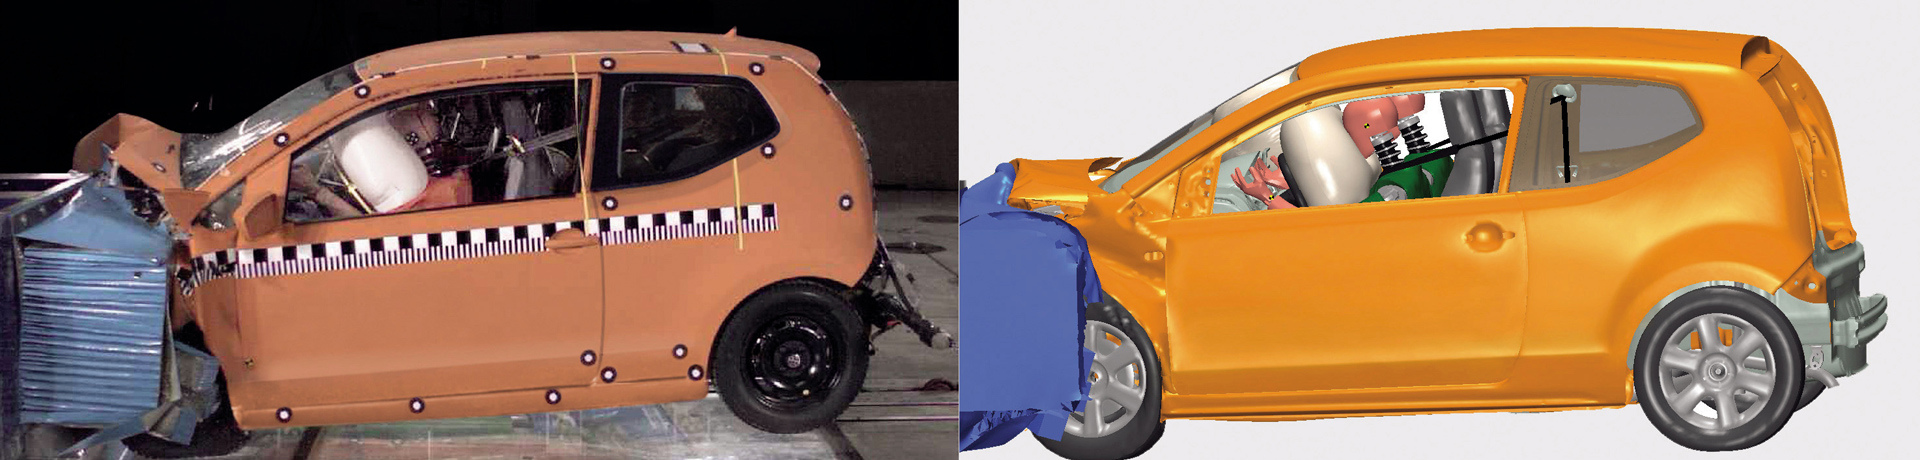 Comparação entre o crash-test real e o virtual de um VW Up!. Imagem de 2012